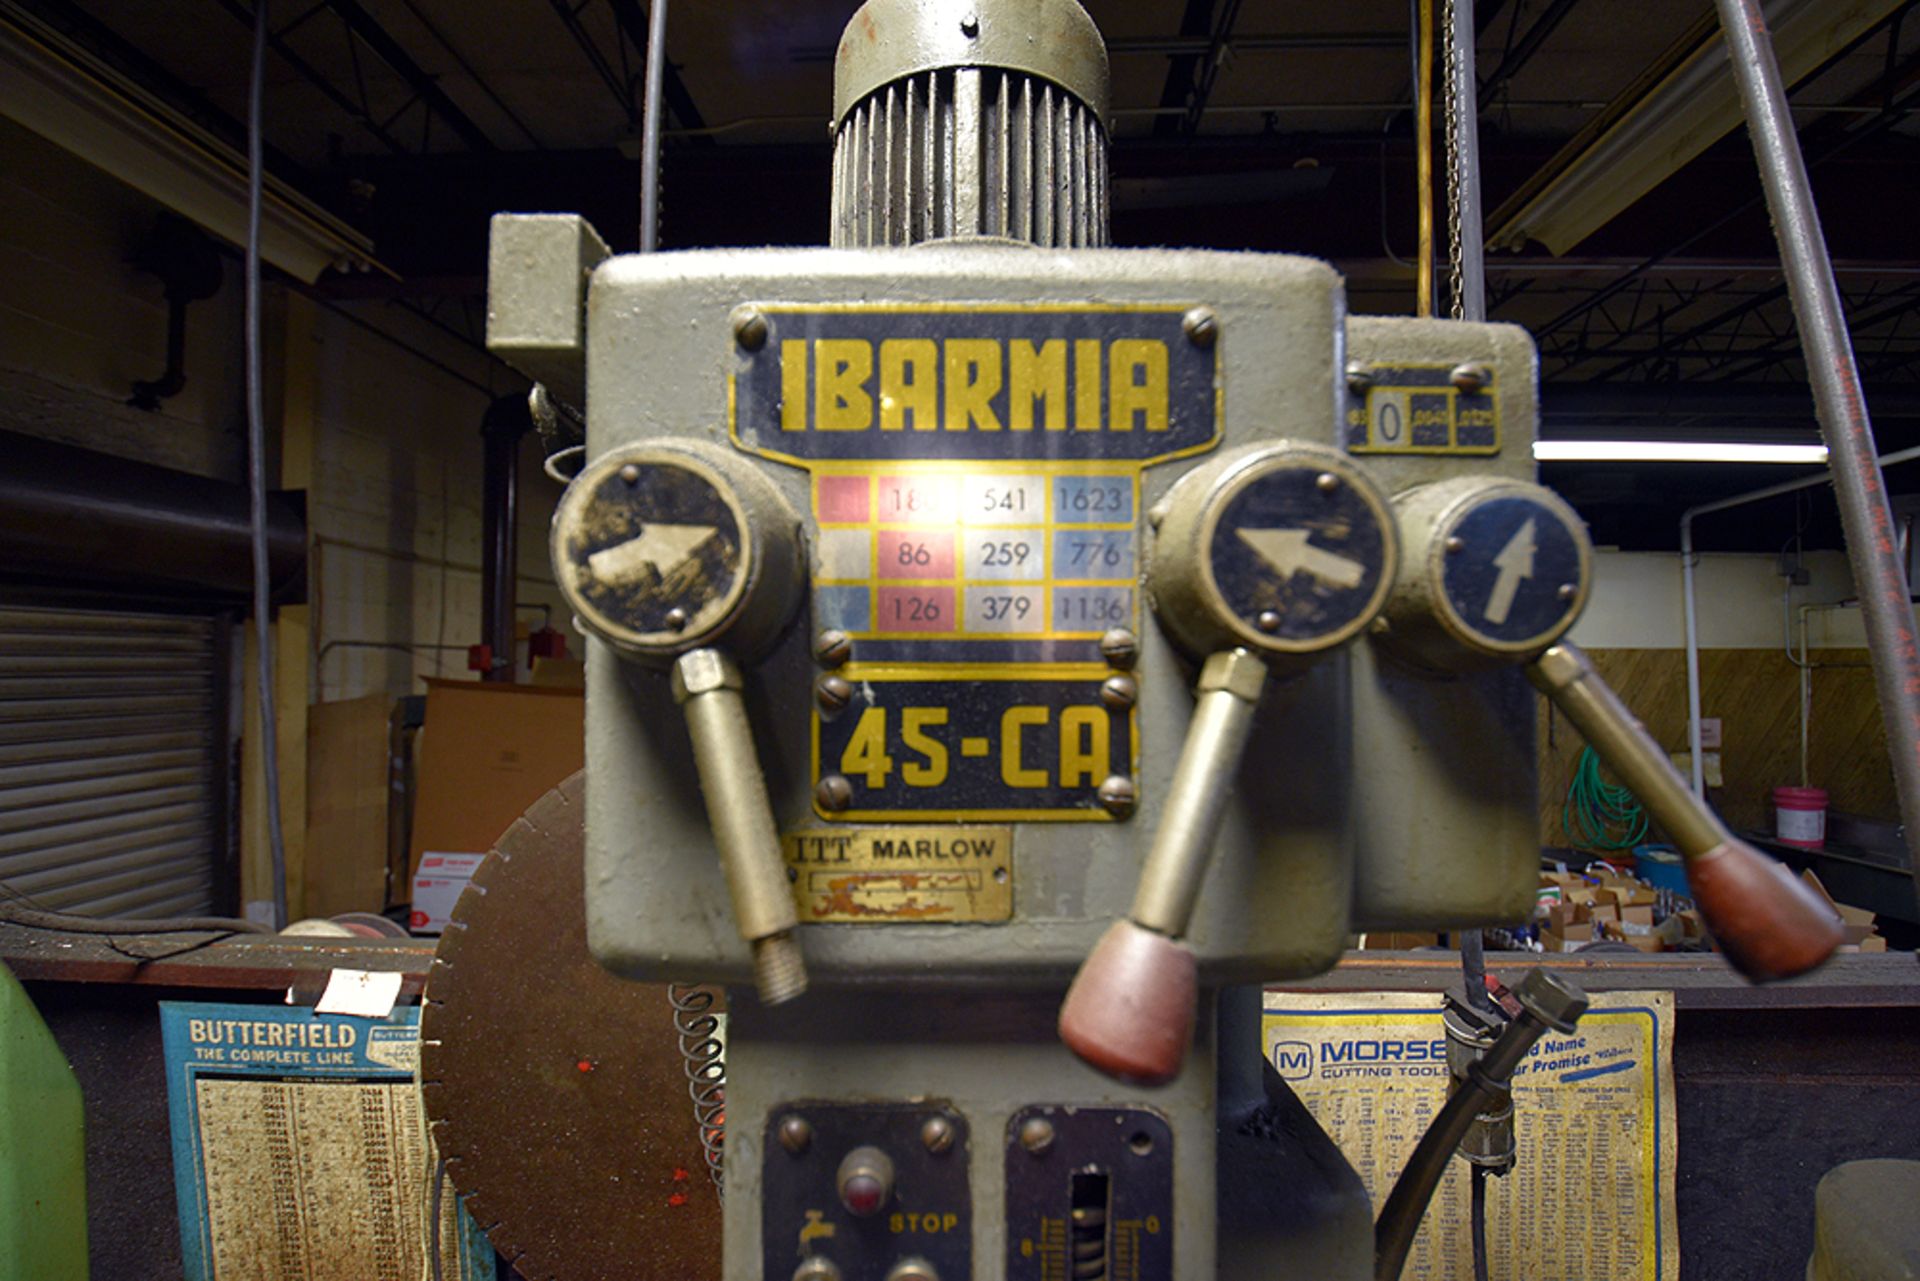 Ibarma 45-CA Drill Press - Image 4 of 5